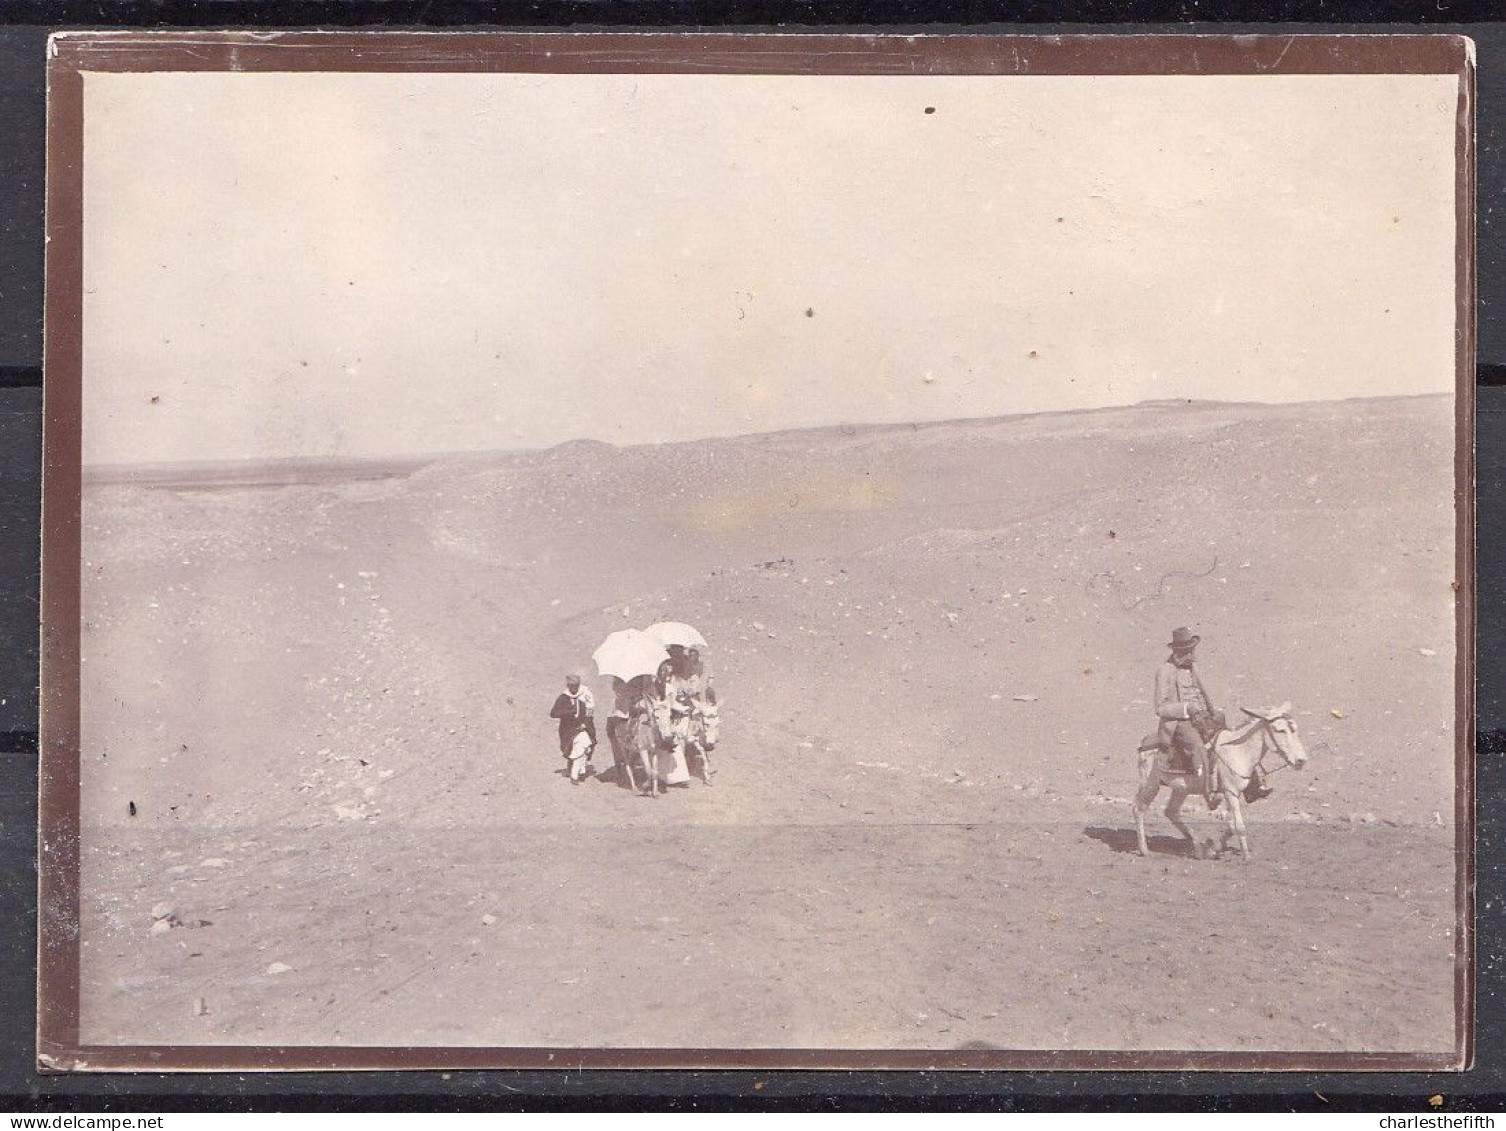 4 VIEILLES PHOTOS DU VOYAGE DE LA FAMILLE ERNST ( Aubel ) En EGYPT En 1890 - ASWAN - SAKKARA - NILE - SUR LE BATEAU - Oud (voor 1900)